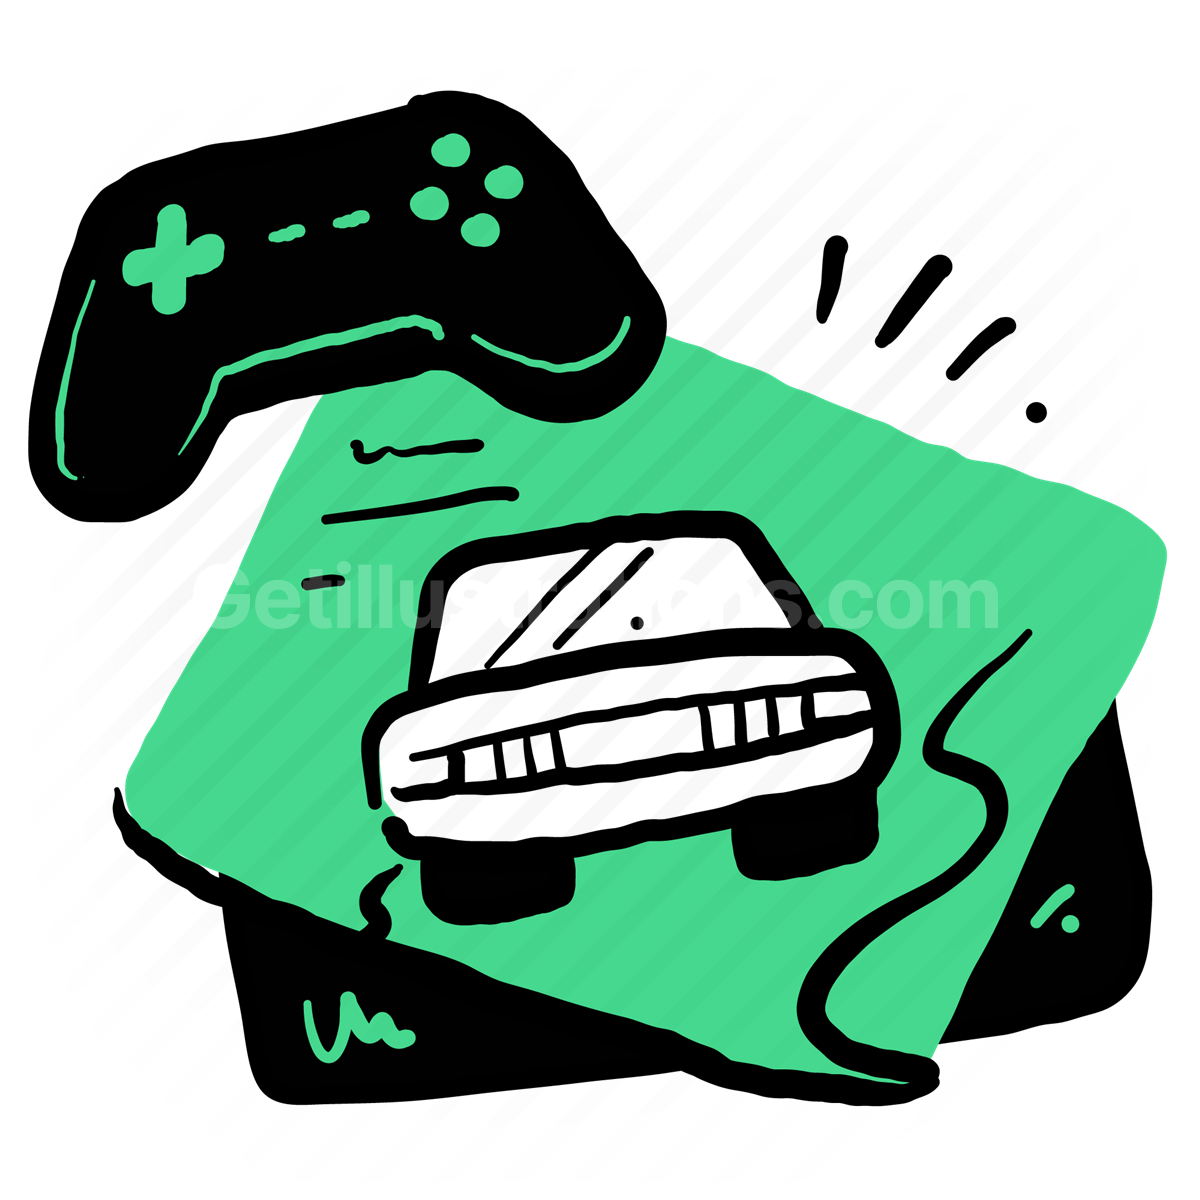 Gaming Industry illustration